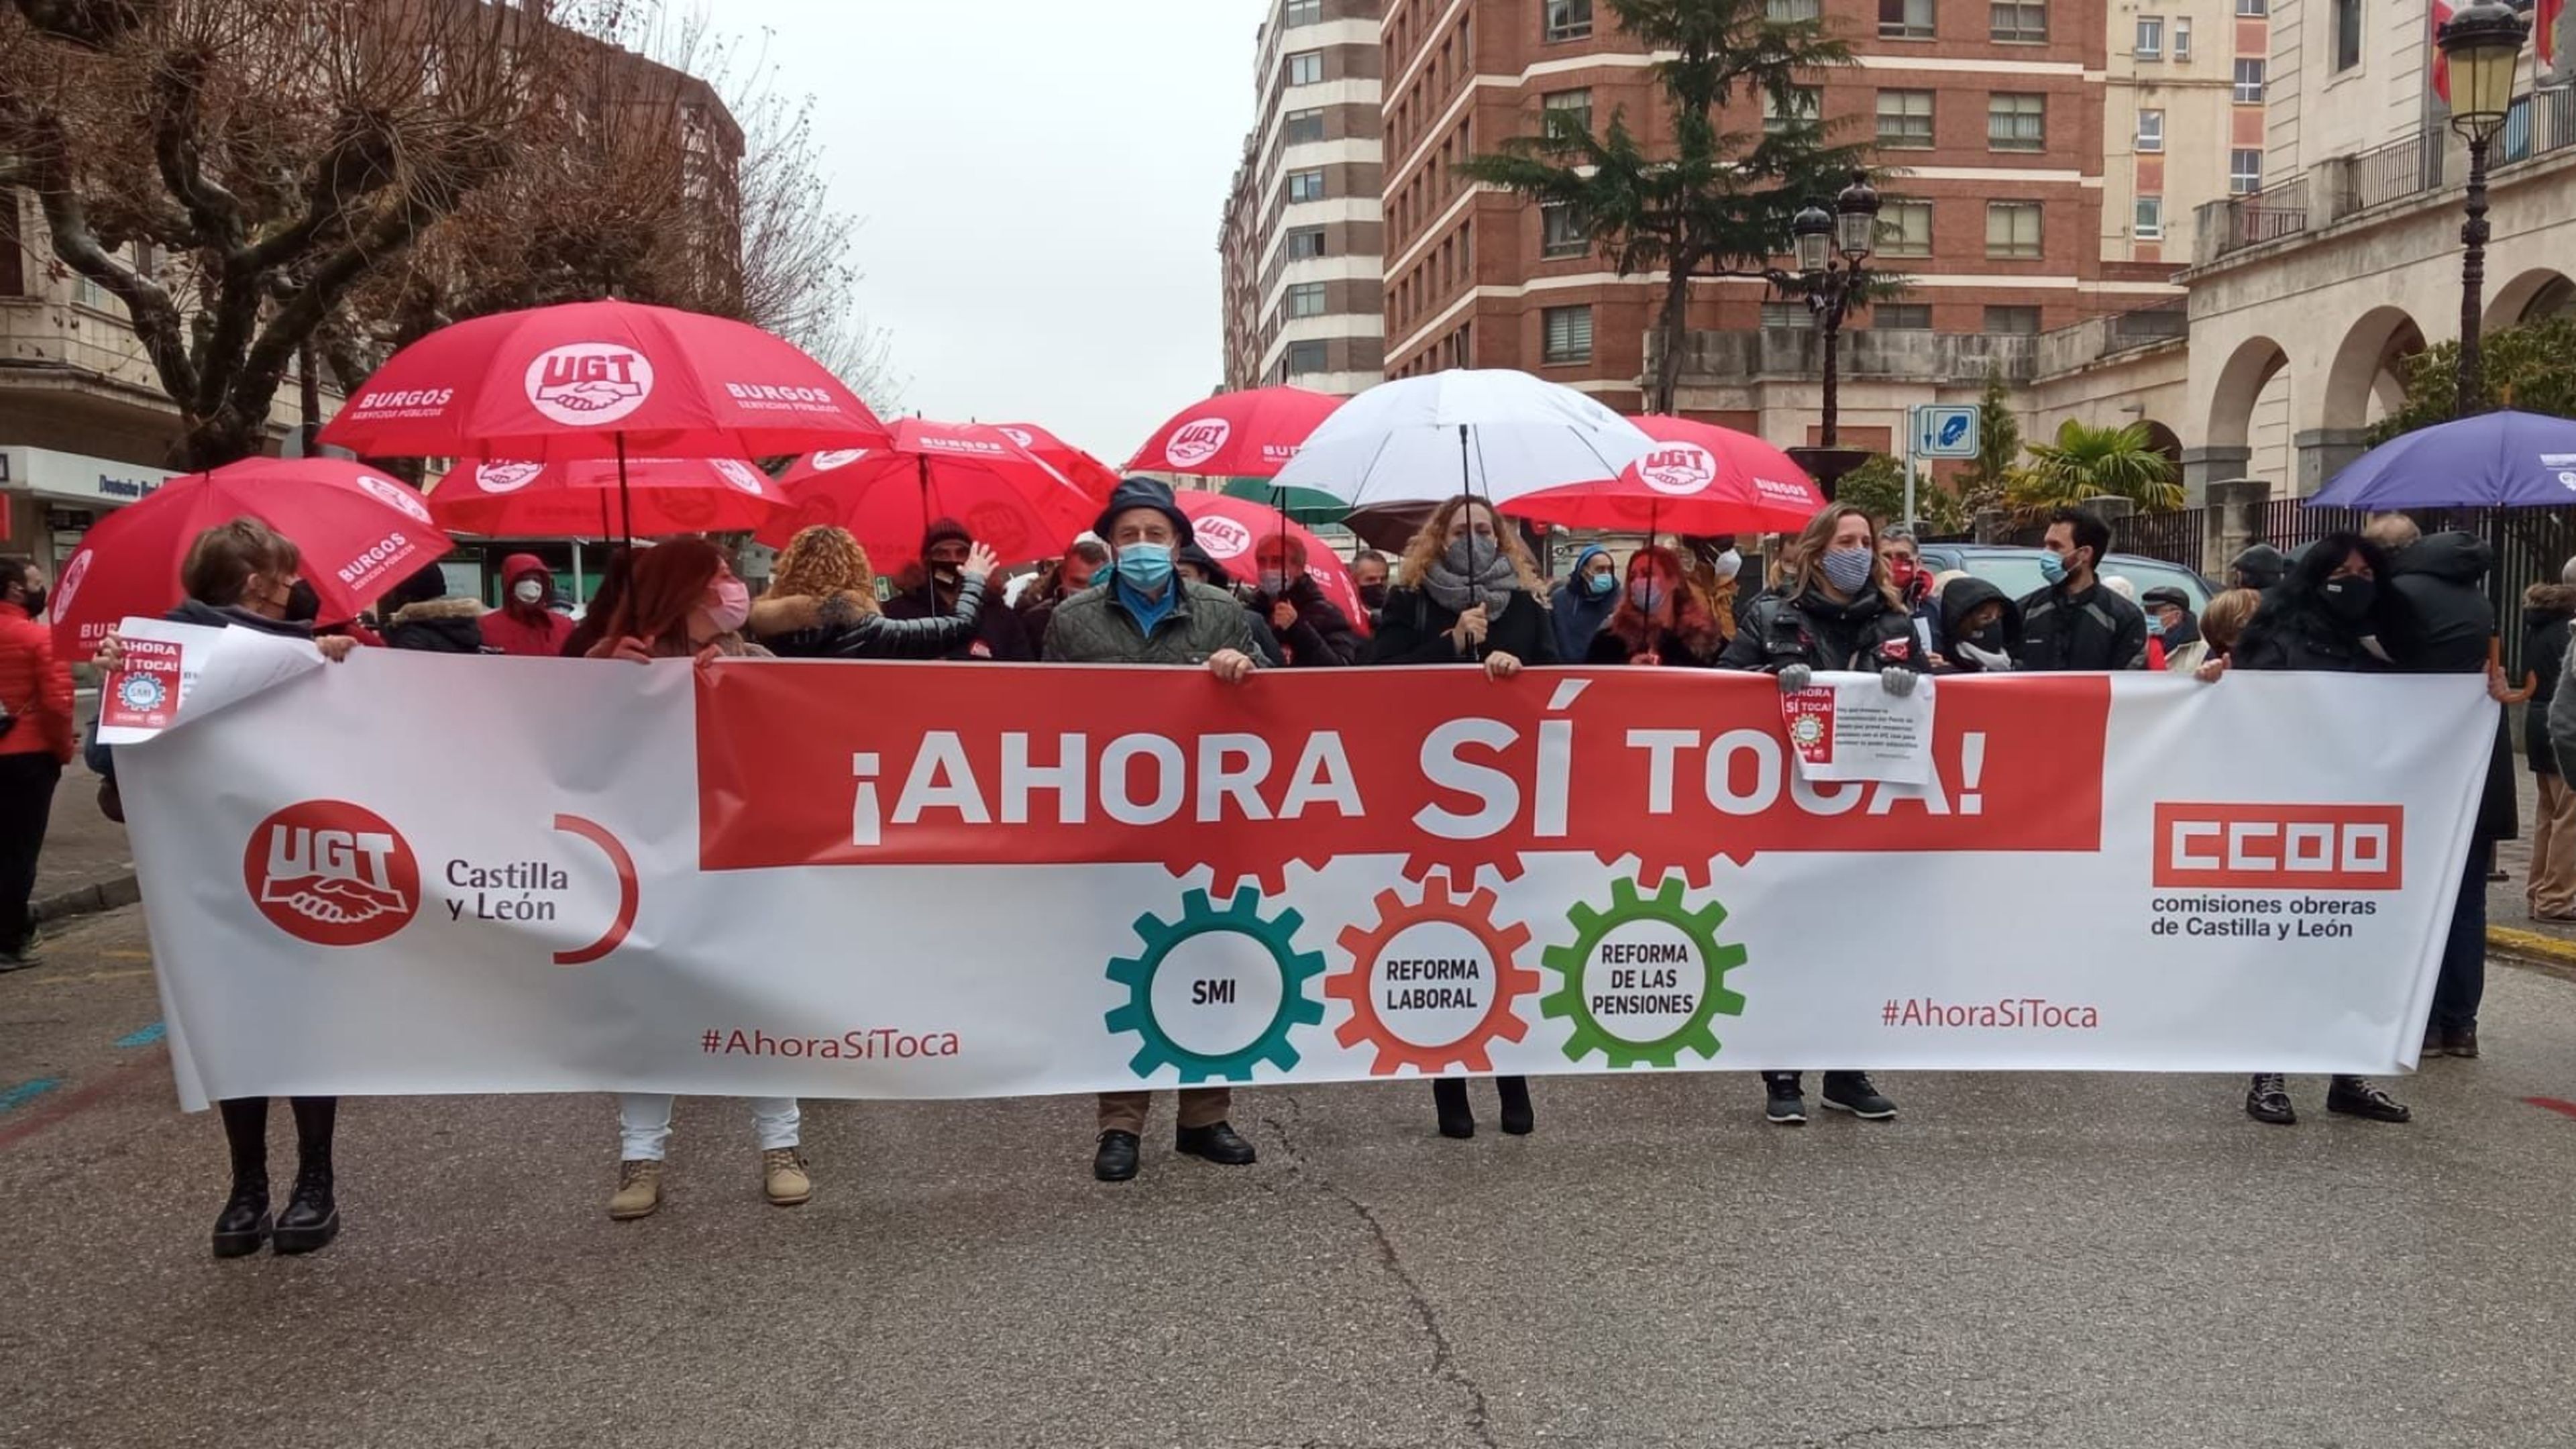 Protestas de UGT y CCOO en Valladolid para reclamar al Gobierno la reforma de las pensiones, la subida del salario mínimo y la derogación de la reforma laboral